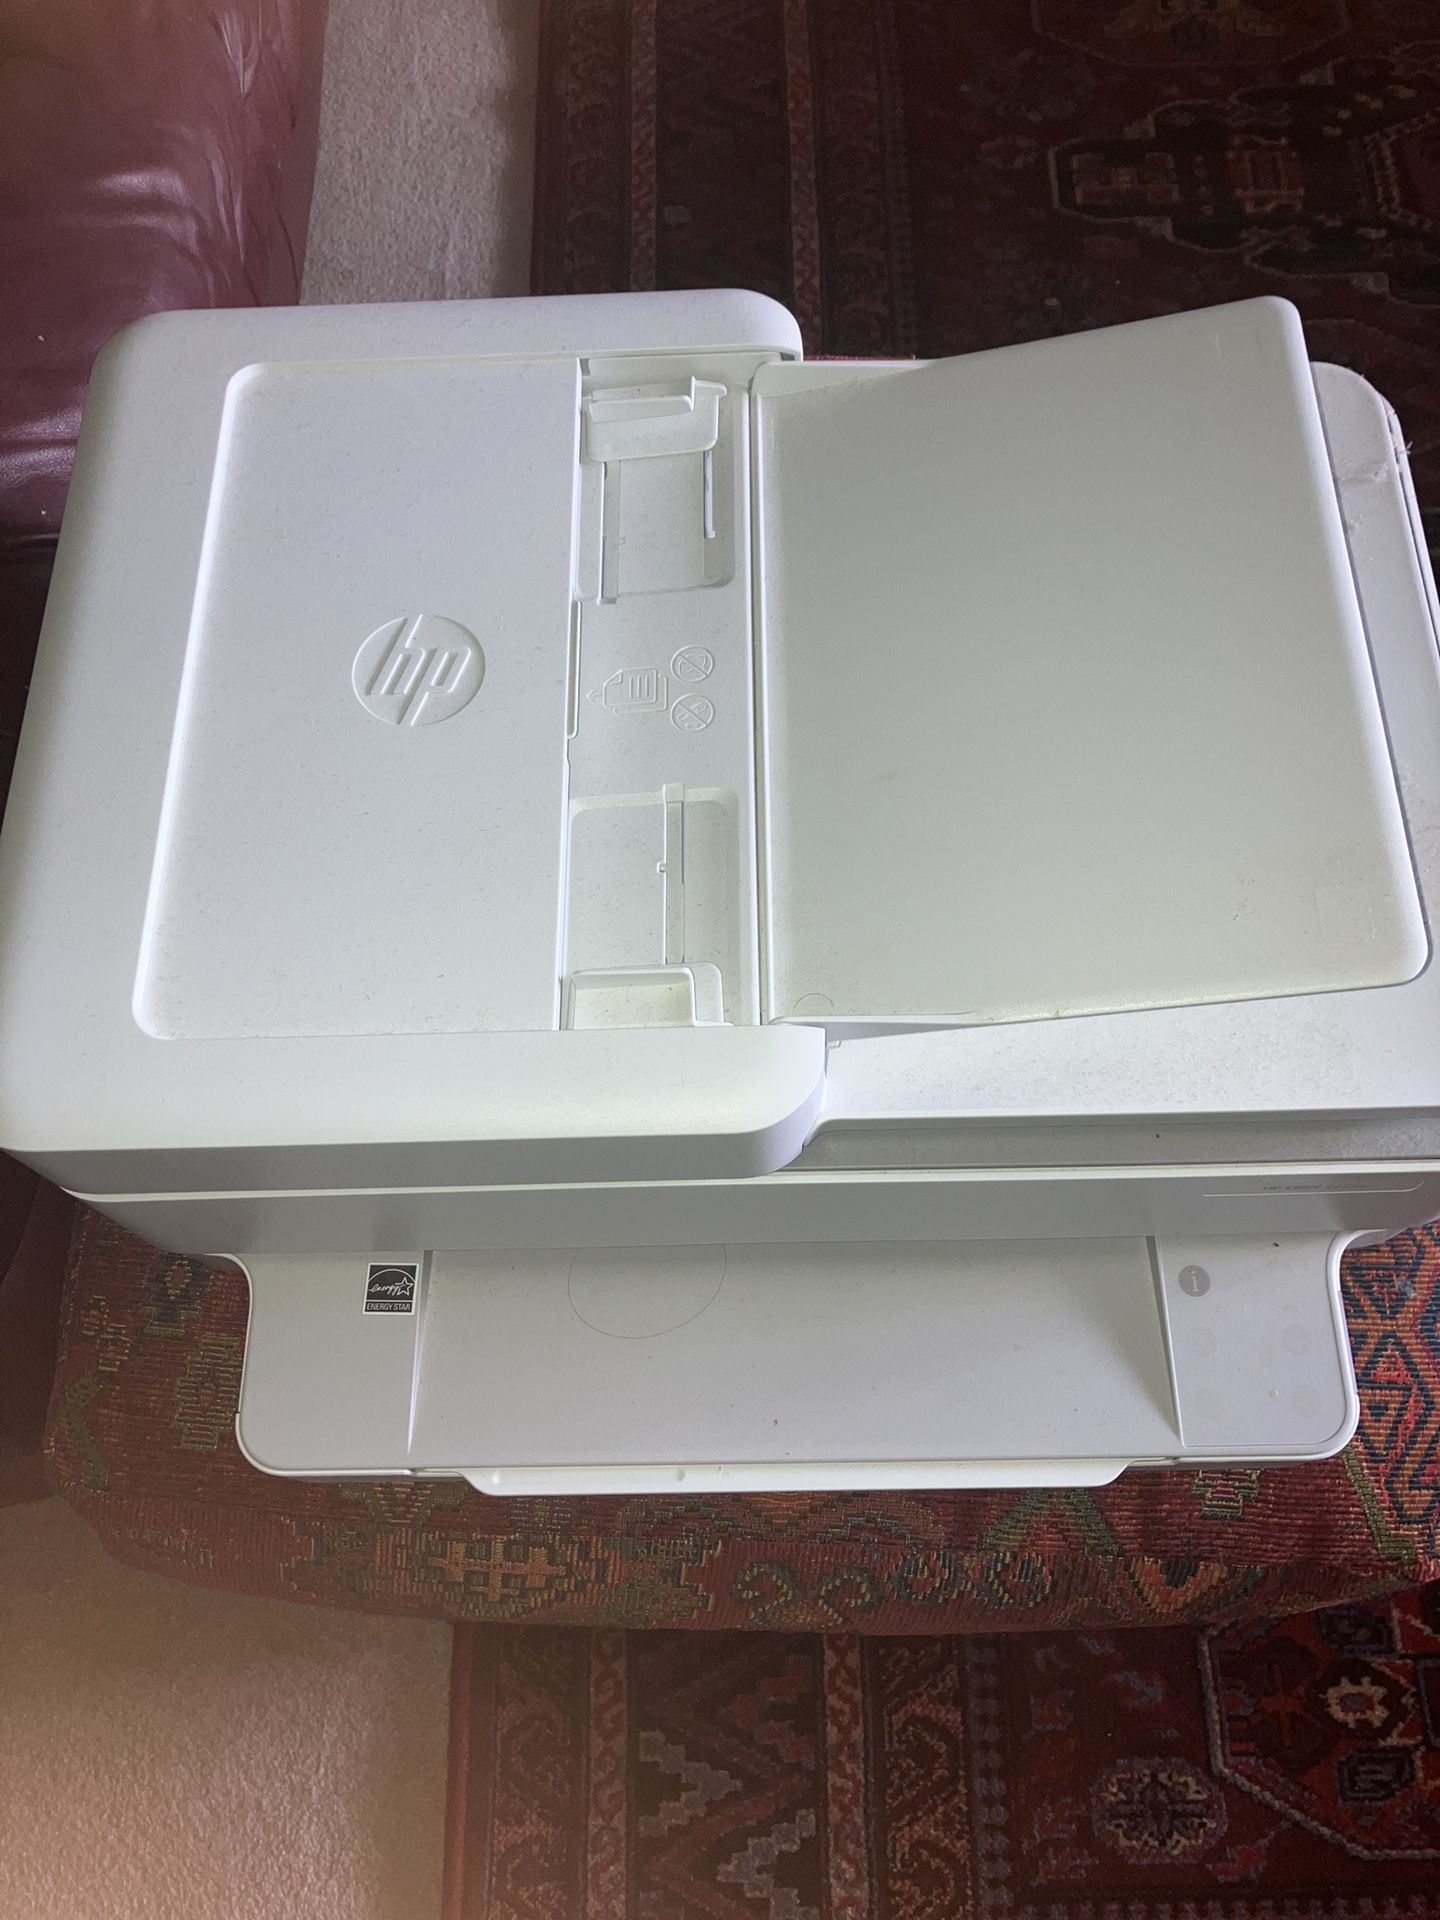 HP Envy 6455e Wireless All In One Inkjet Printer- White